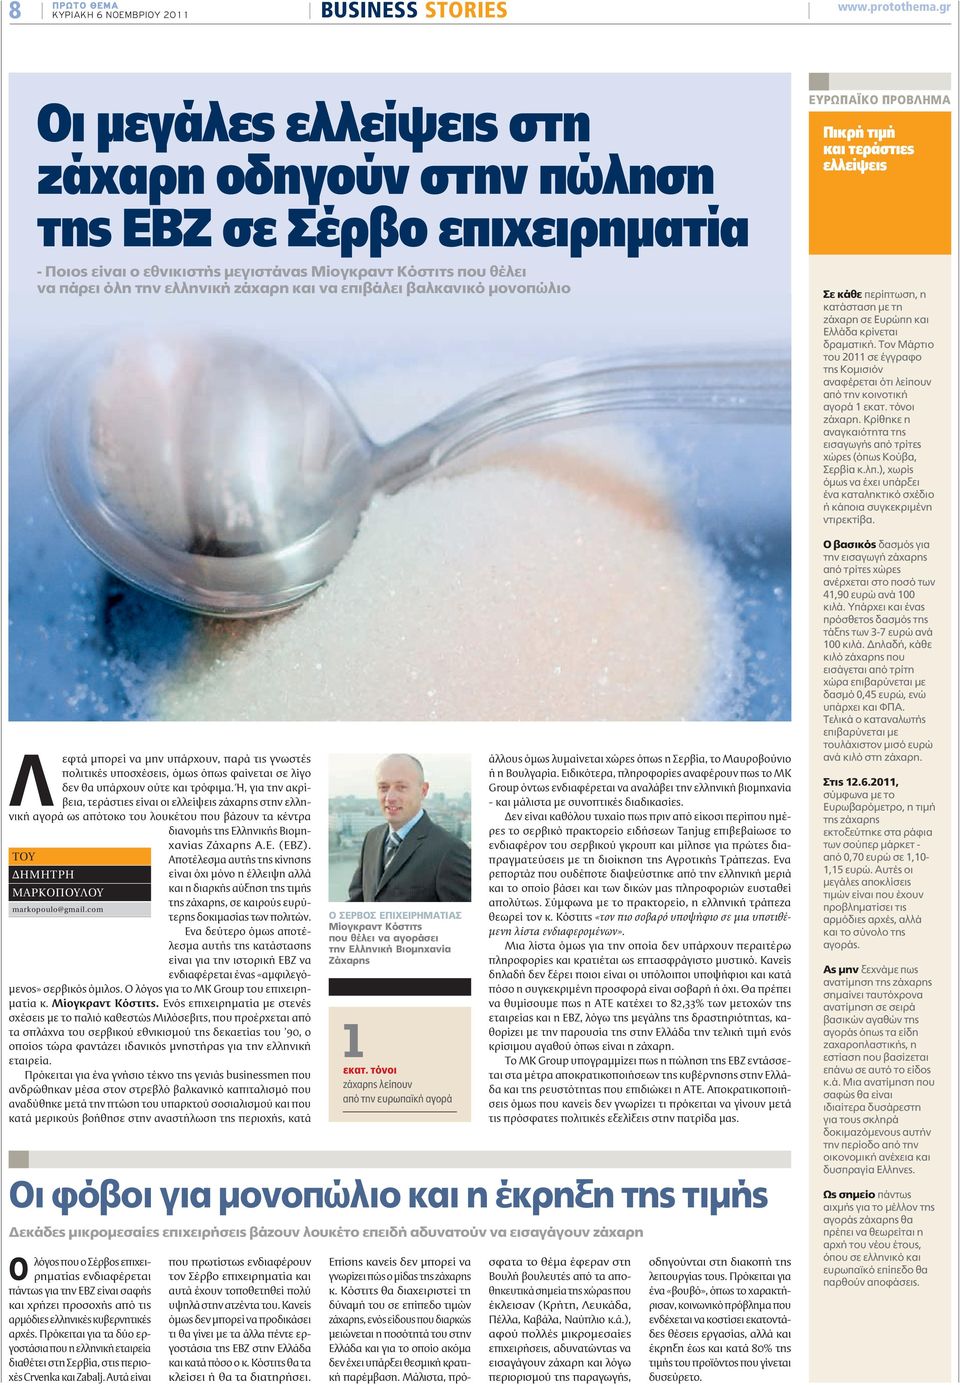 Ή, για την ακρίβεια, τεράστιες είναι οι ελλείψεις ζάχαρης στην ελληνική αγορά ως απότοκο του λουκέτου που βάζουν τα κέντρα διανομής της Ελληνικής Βιομηχανίας Ζάχαρης Α.Ε. (ΕΒΖ).